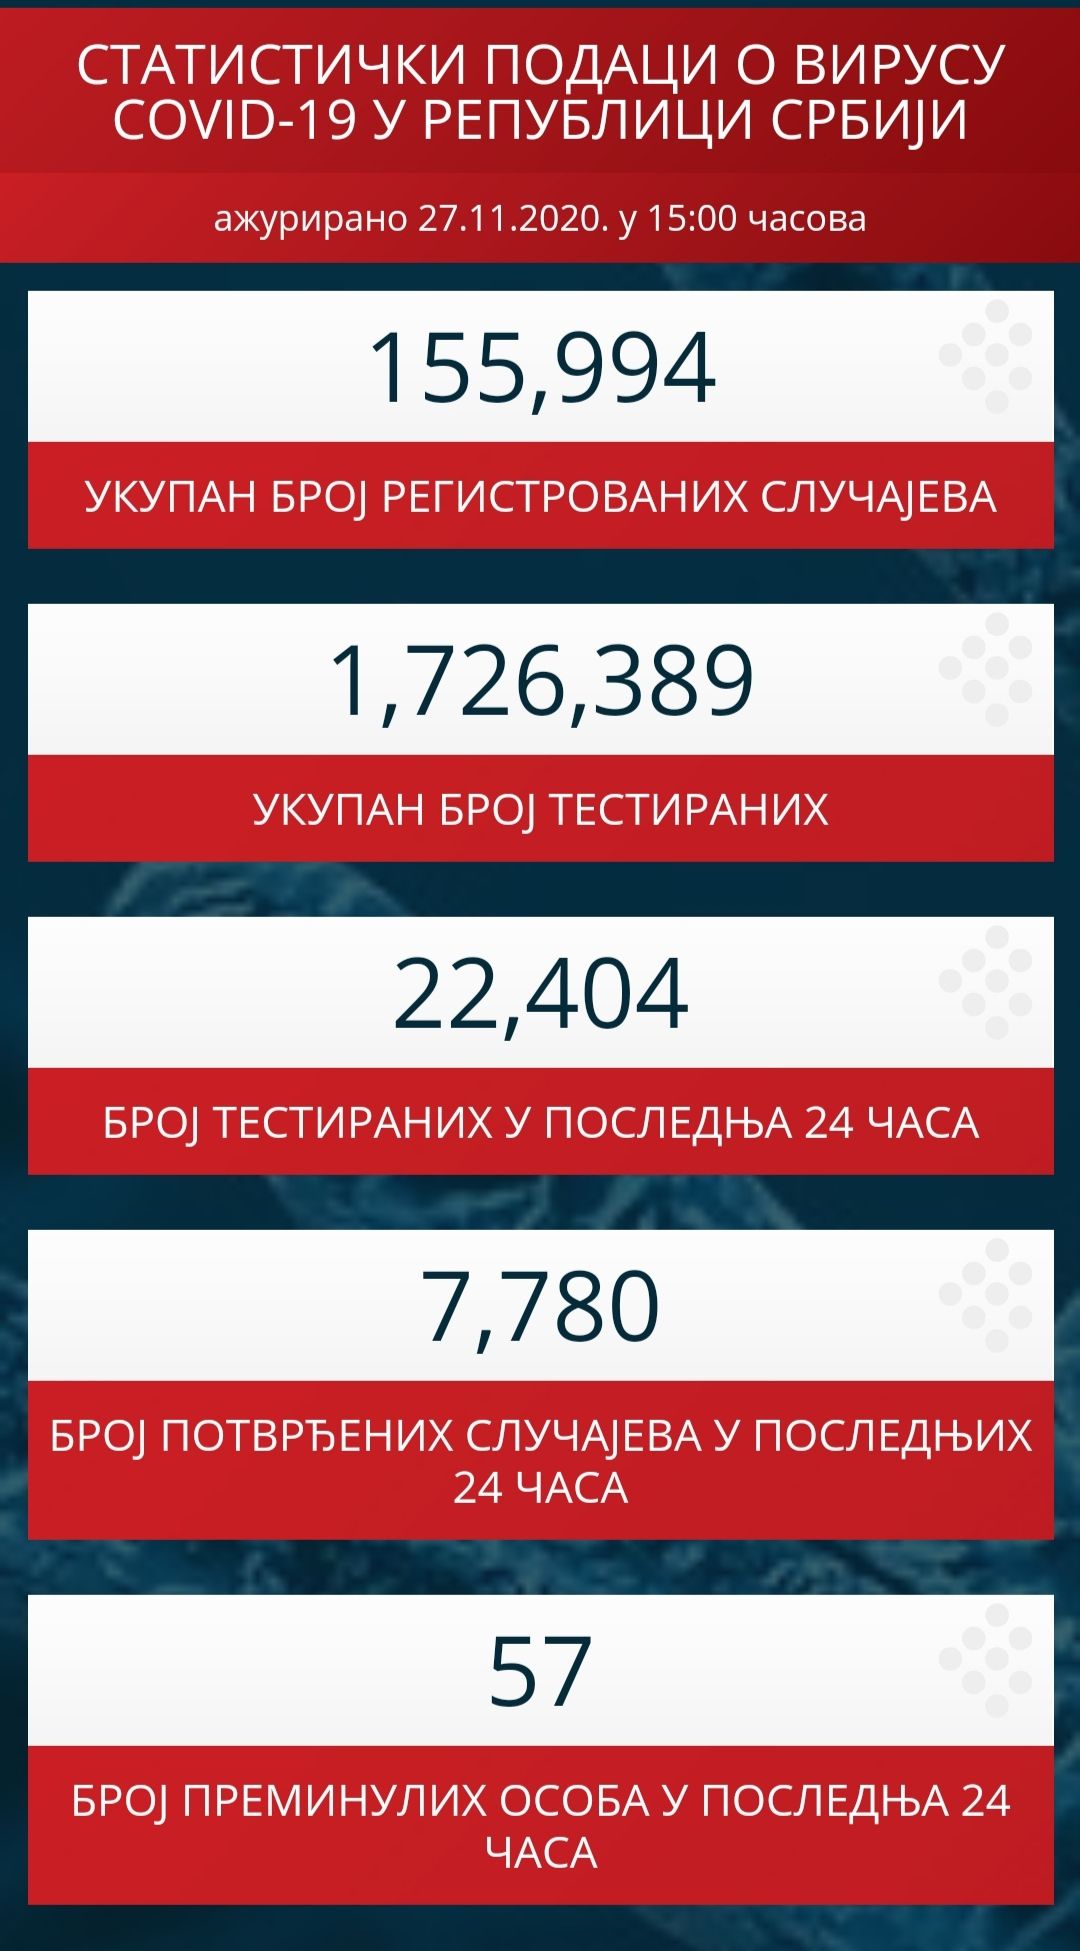 U poslednja 24 sata u Srbiji 57 smrtnih slučajeva usled korona virusa, 7.780 novoinficiranih